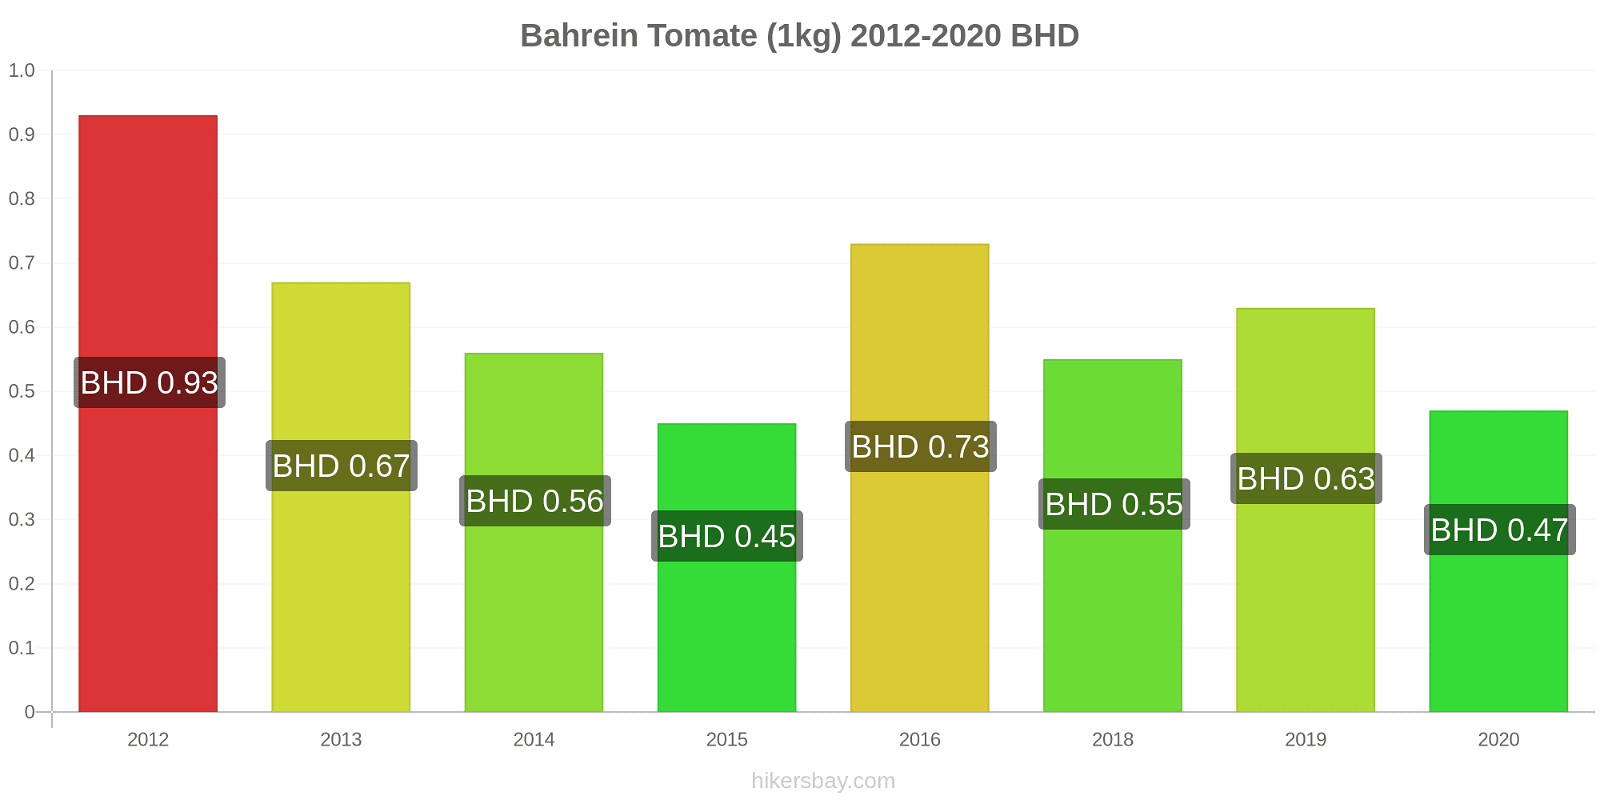 Bahrein cambios de precios Tomate (1kg) hikersbay.com